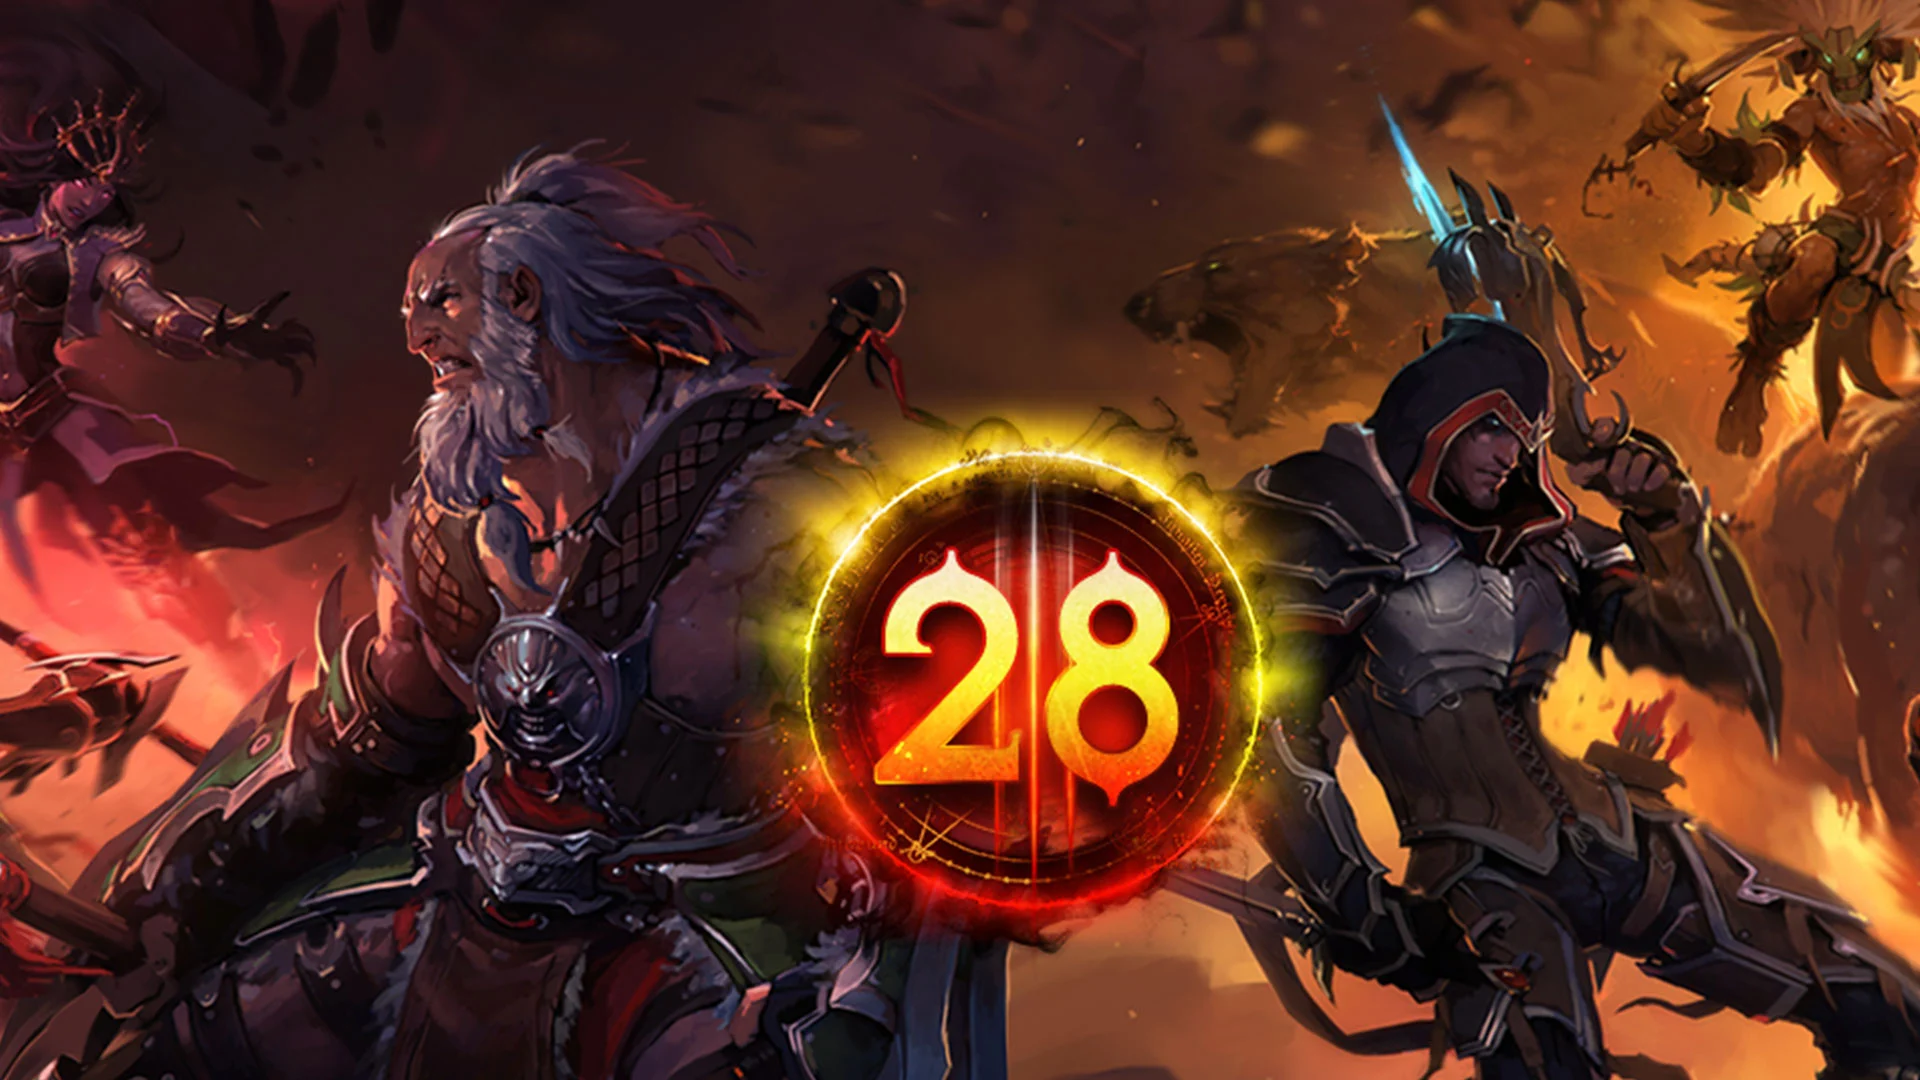 Diablo 3: When is the Season 28 End Date